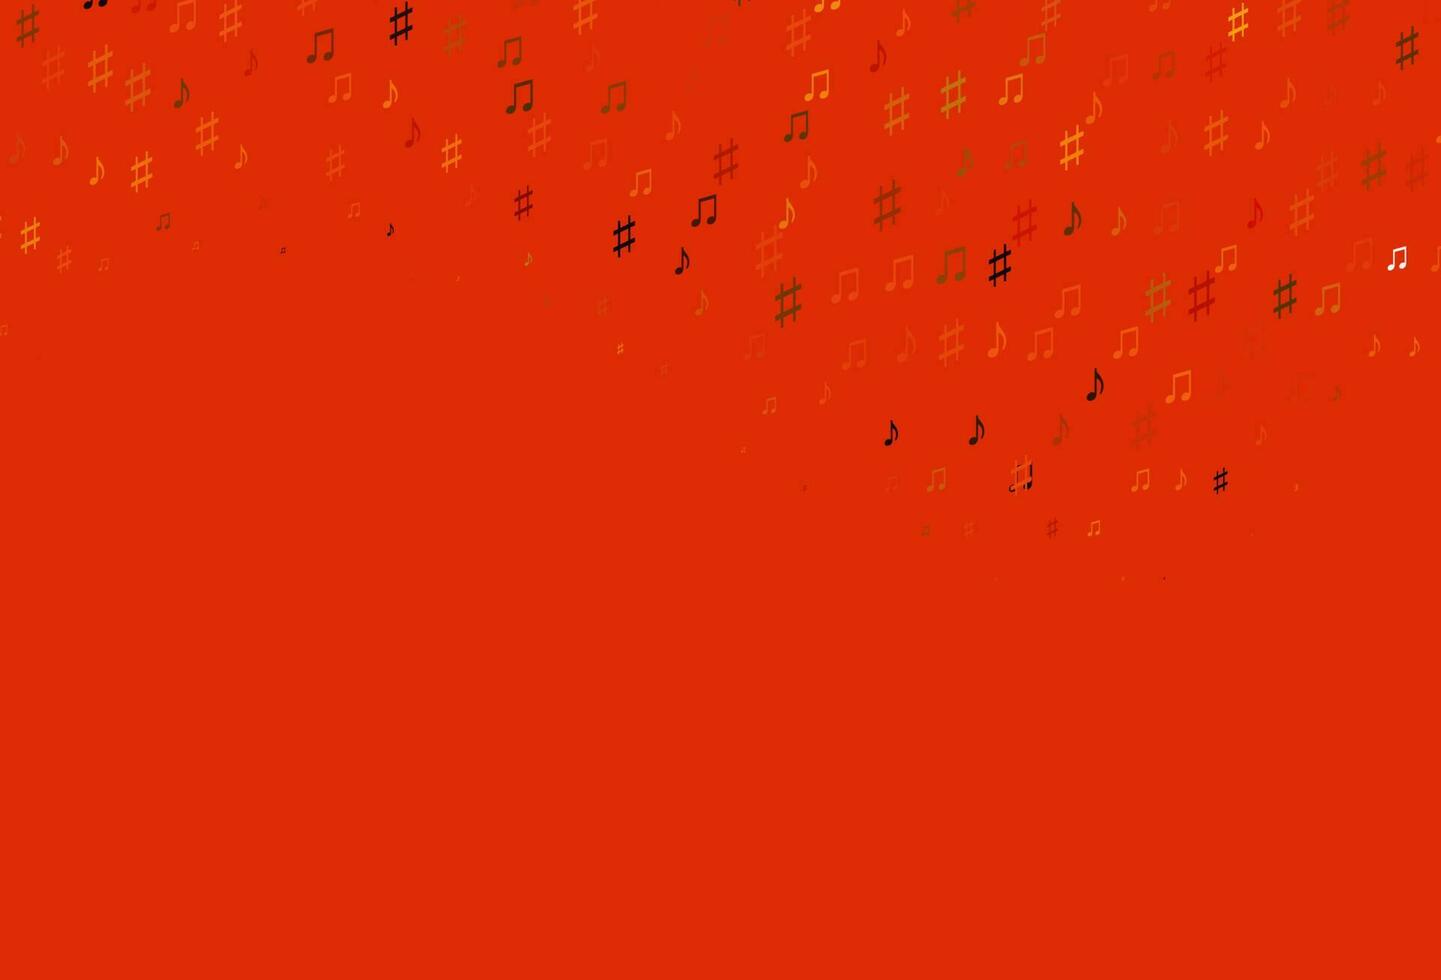 texture vettoriale arancione chiaro con note musicali.